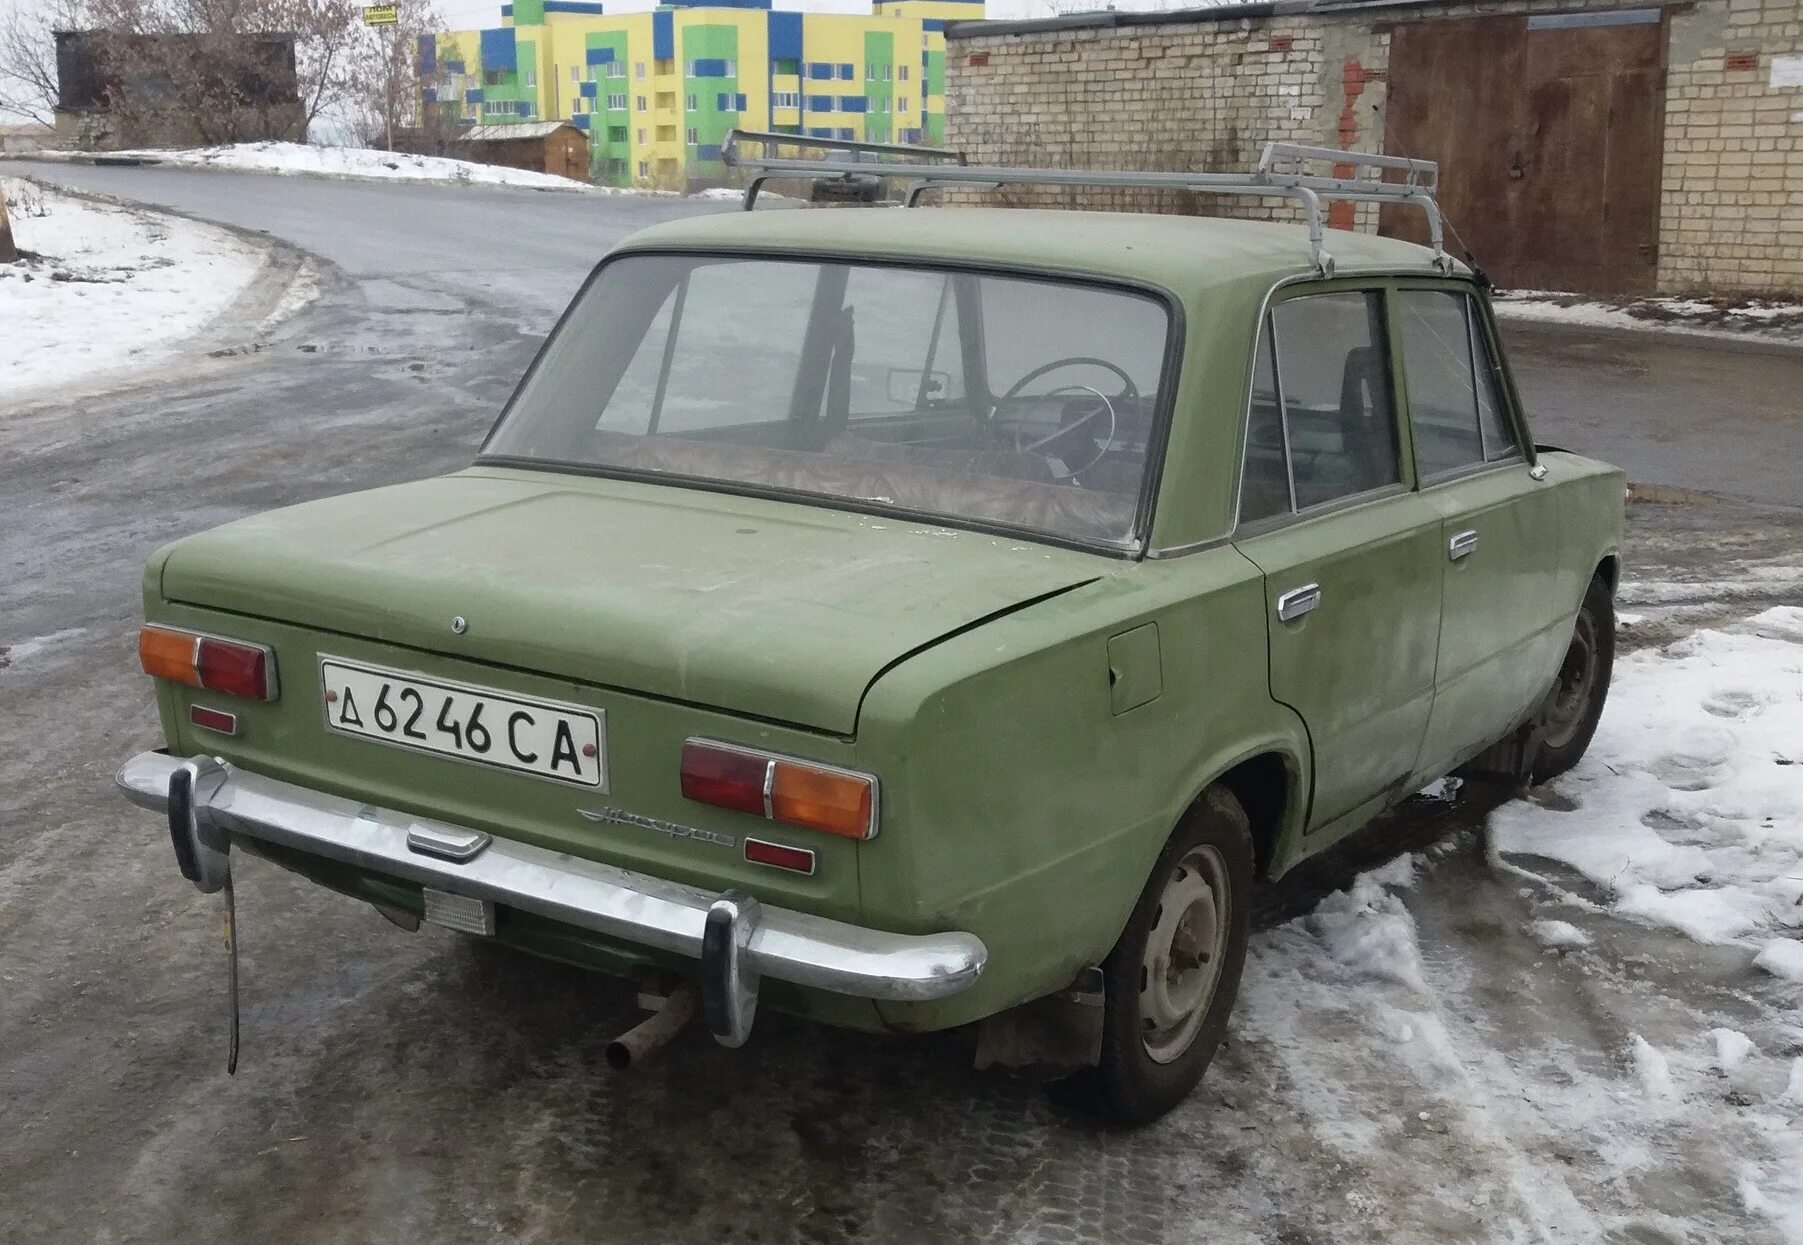 Машины почем. Автомобильная краска в банках Карачаево Черкесия 1993 год. Авито Саратов купить авто 2101. На какой турбазщ5 стоит белый Старая машина Ульяновск.